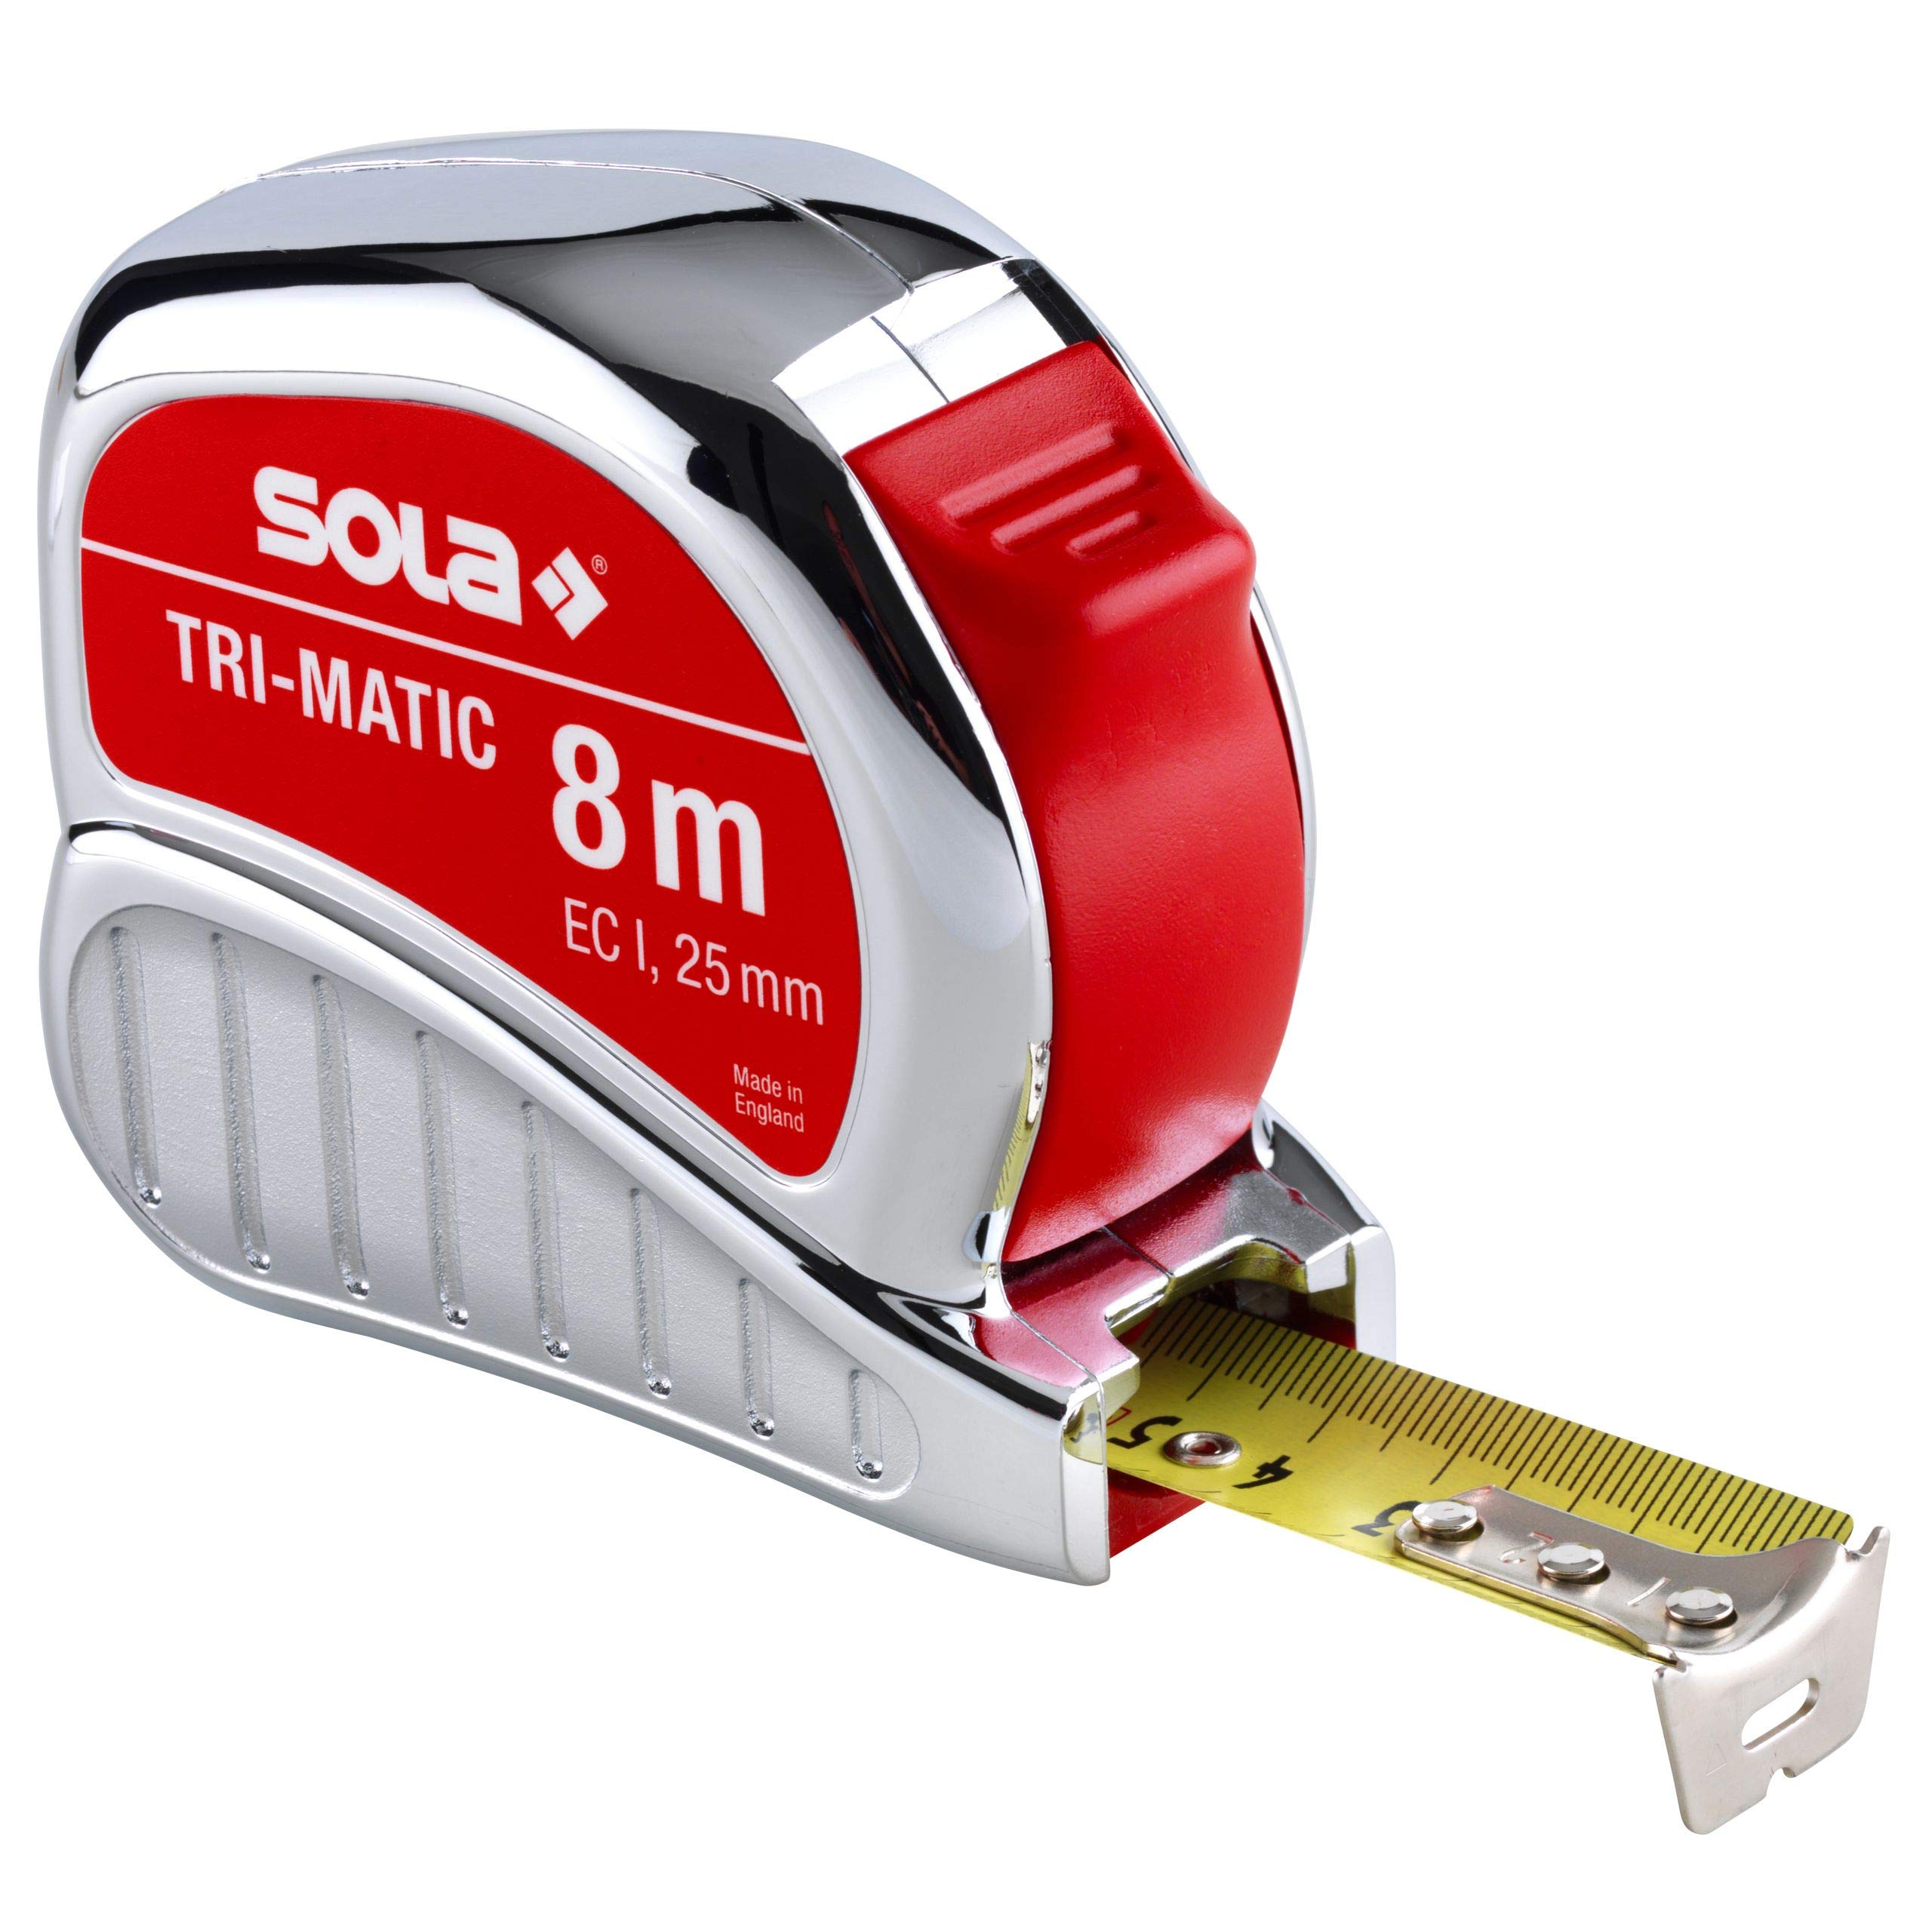 SOLA Bandmaß - TRI-MATIC - 8m / 25mm - Profi-Taschenbandmaß mit Gürtelclip - Stahlband, gelb lackiert mit mm Skala - Genauigkeitsklasse I - Rollmeter mit beweglichem Endhaken - Länge 8m/25mm